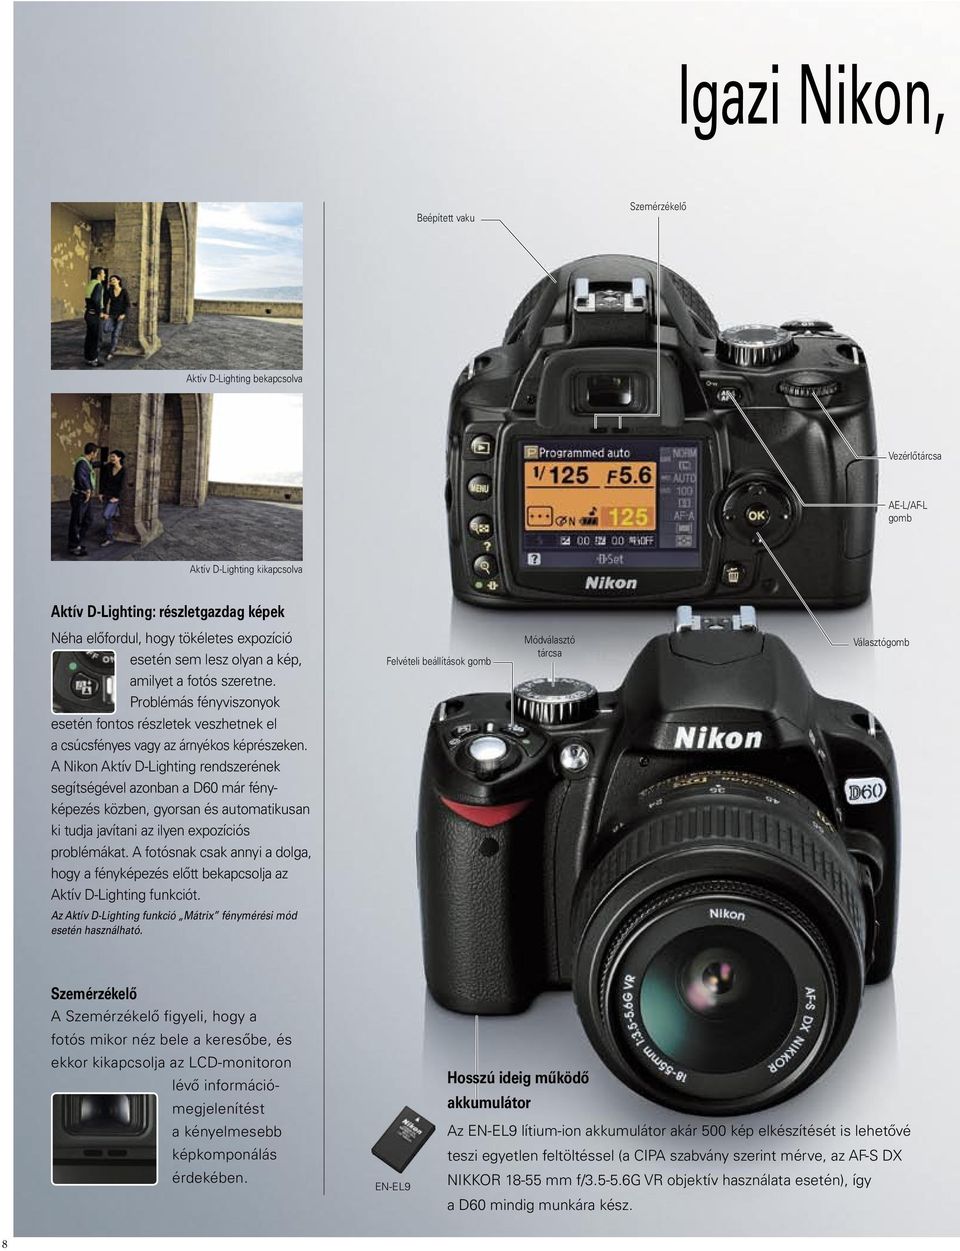 A Nikon Aktív D-Lighting rendszerének segítségével azonban a D60 már fényképezés közben, gyorsan és automatikusan ki tudja javítani az ilyen expozíciós problémákat.